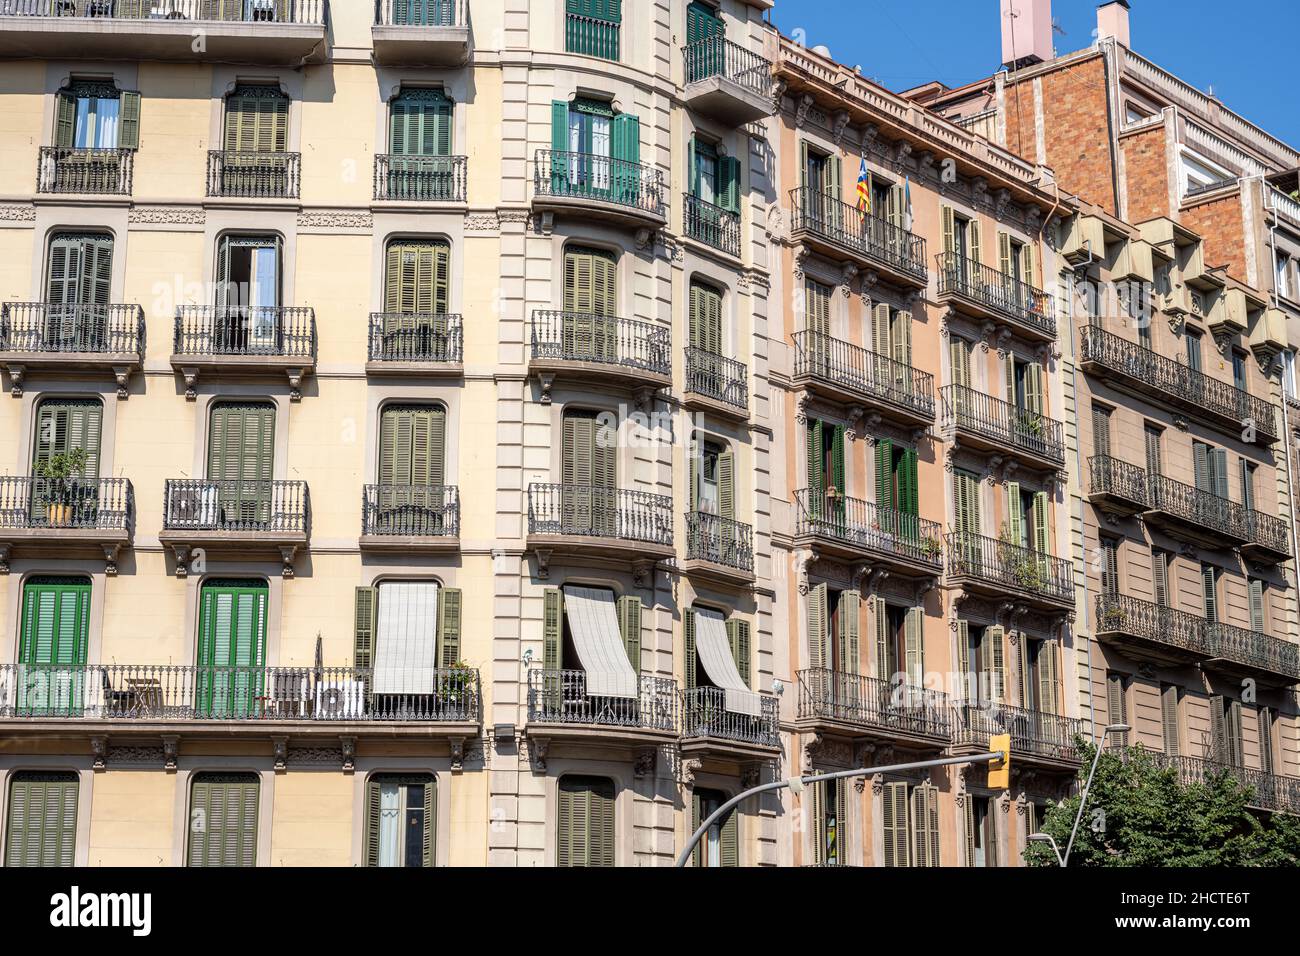 Vieux immeubles typiques d'appartements vus à Barcelone, Espagne Banque D'Images